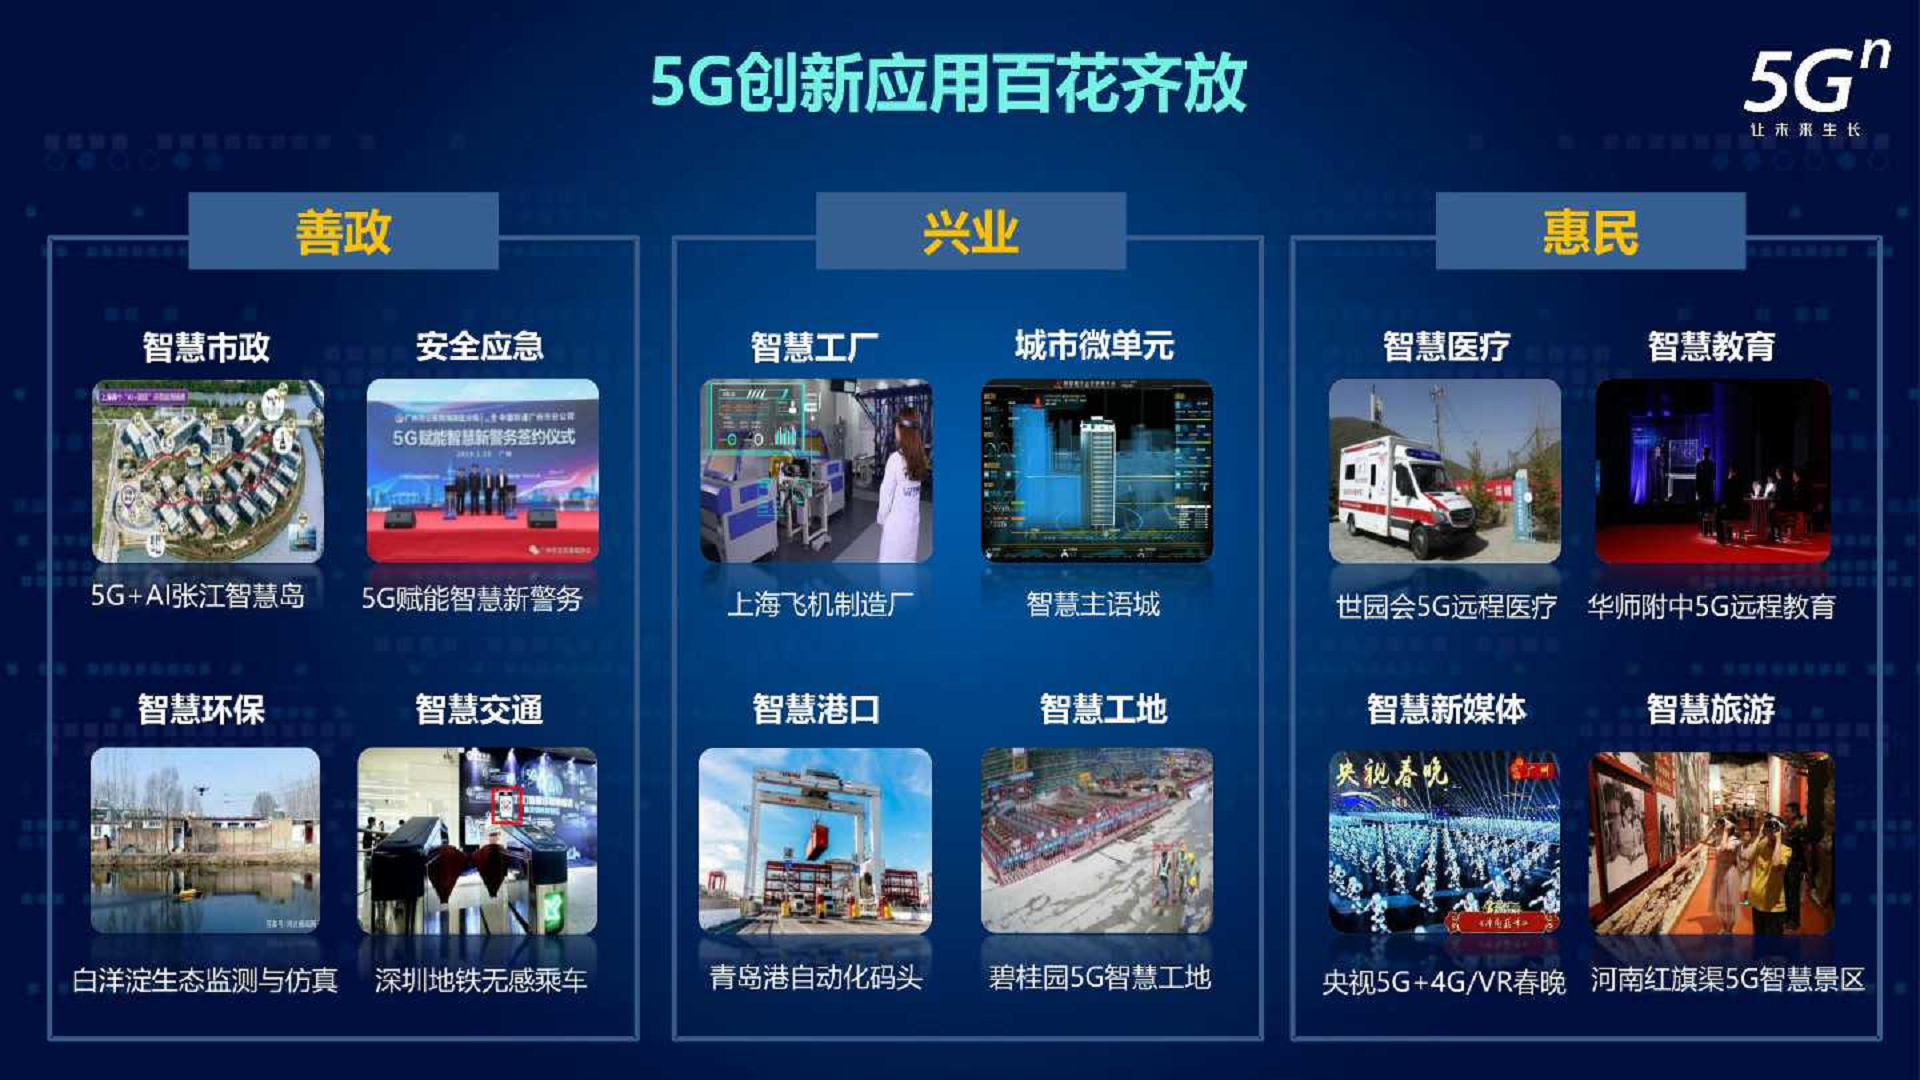 沈阳 5G 网络物流园：科技与物流融合的典范，引领未来物流潮流  第1张